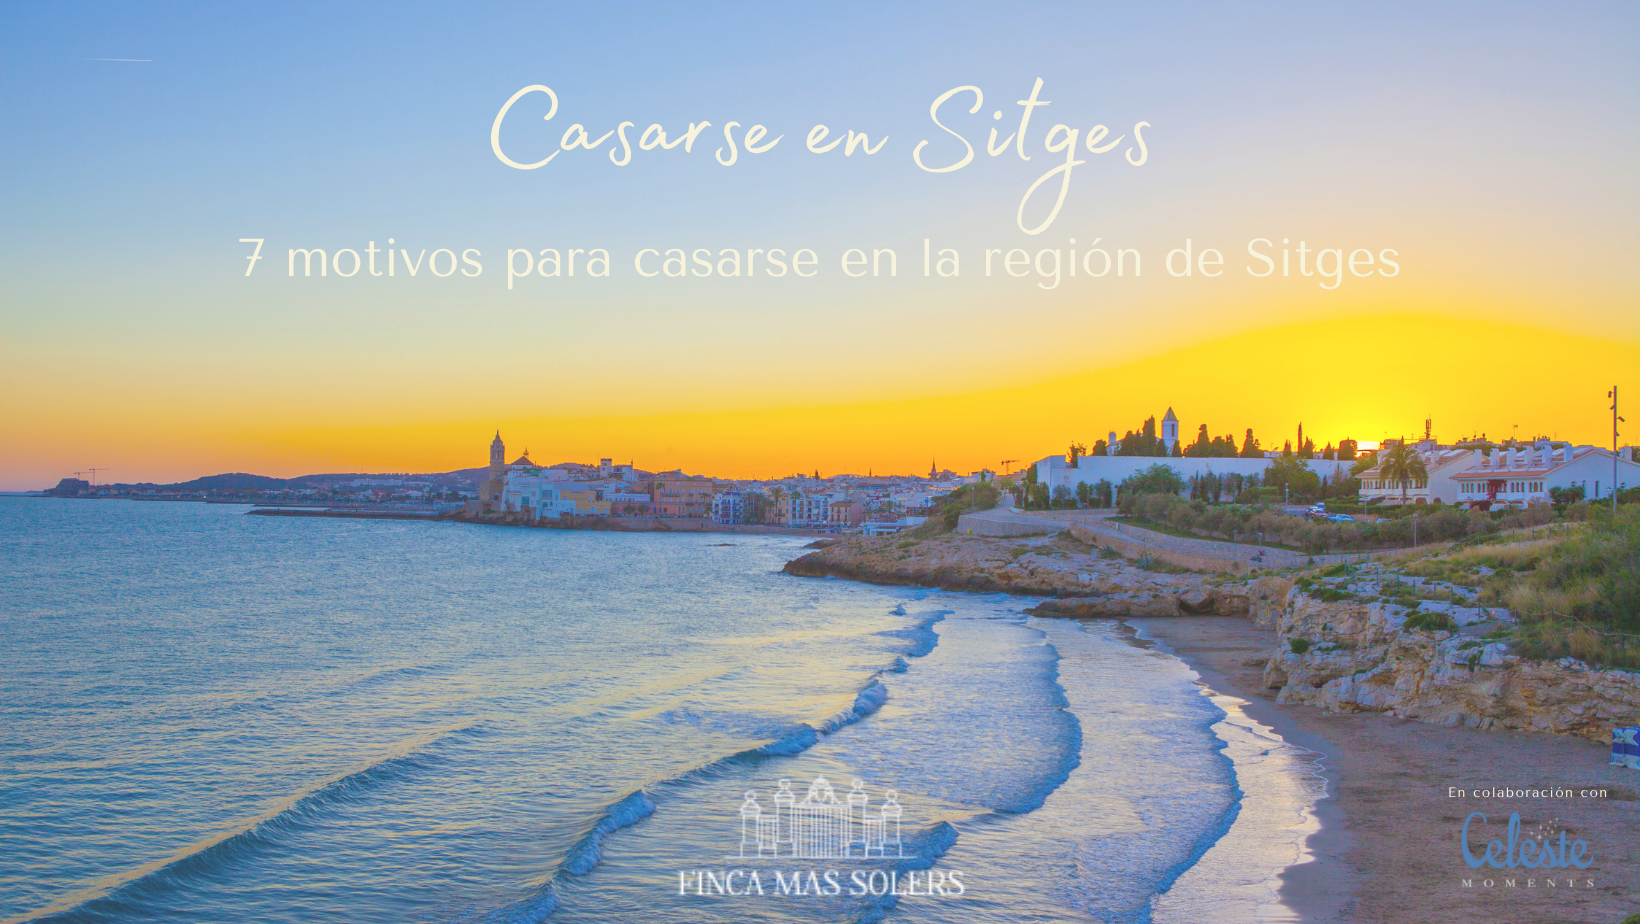 7 motivos para casarse en la región de Sitges